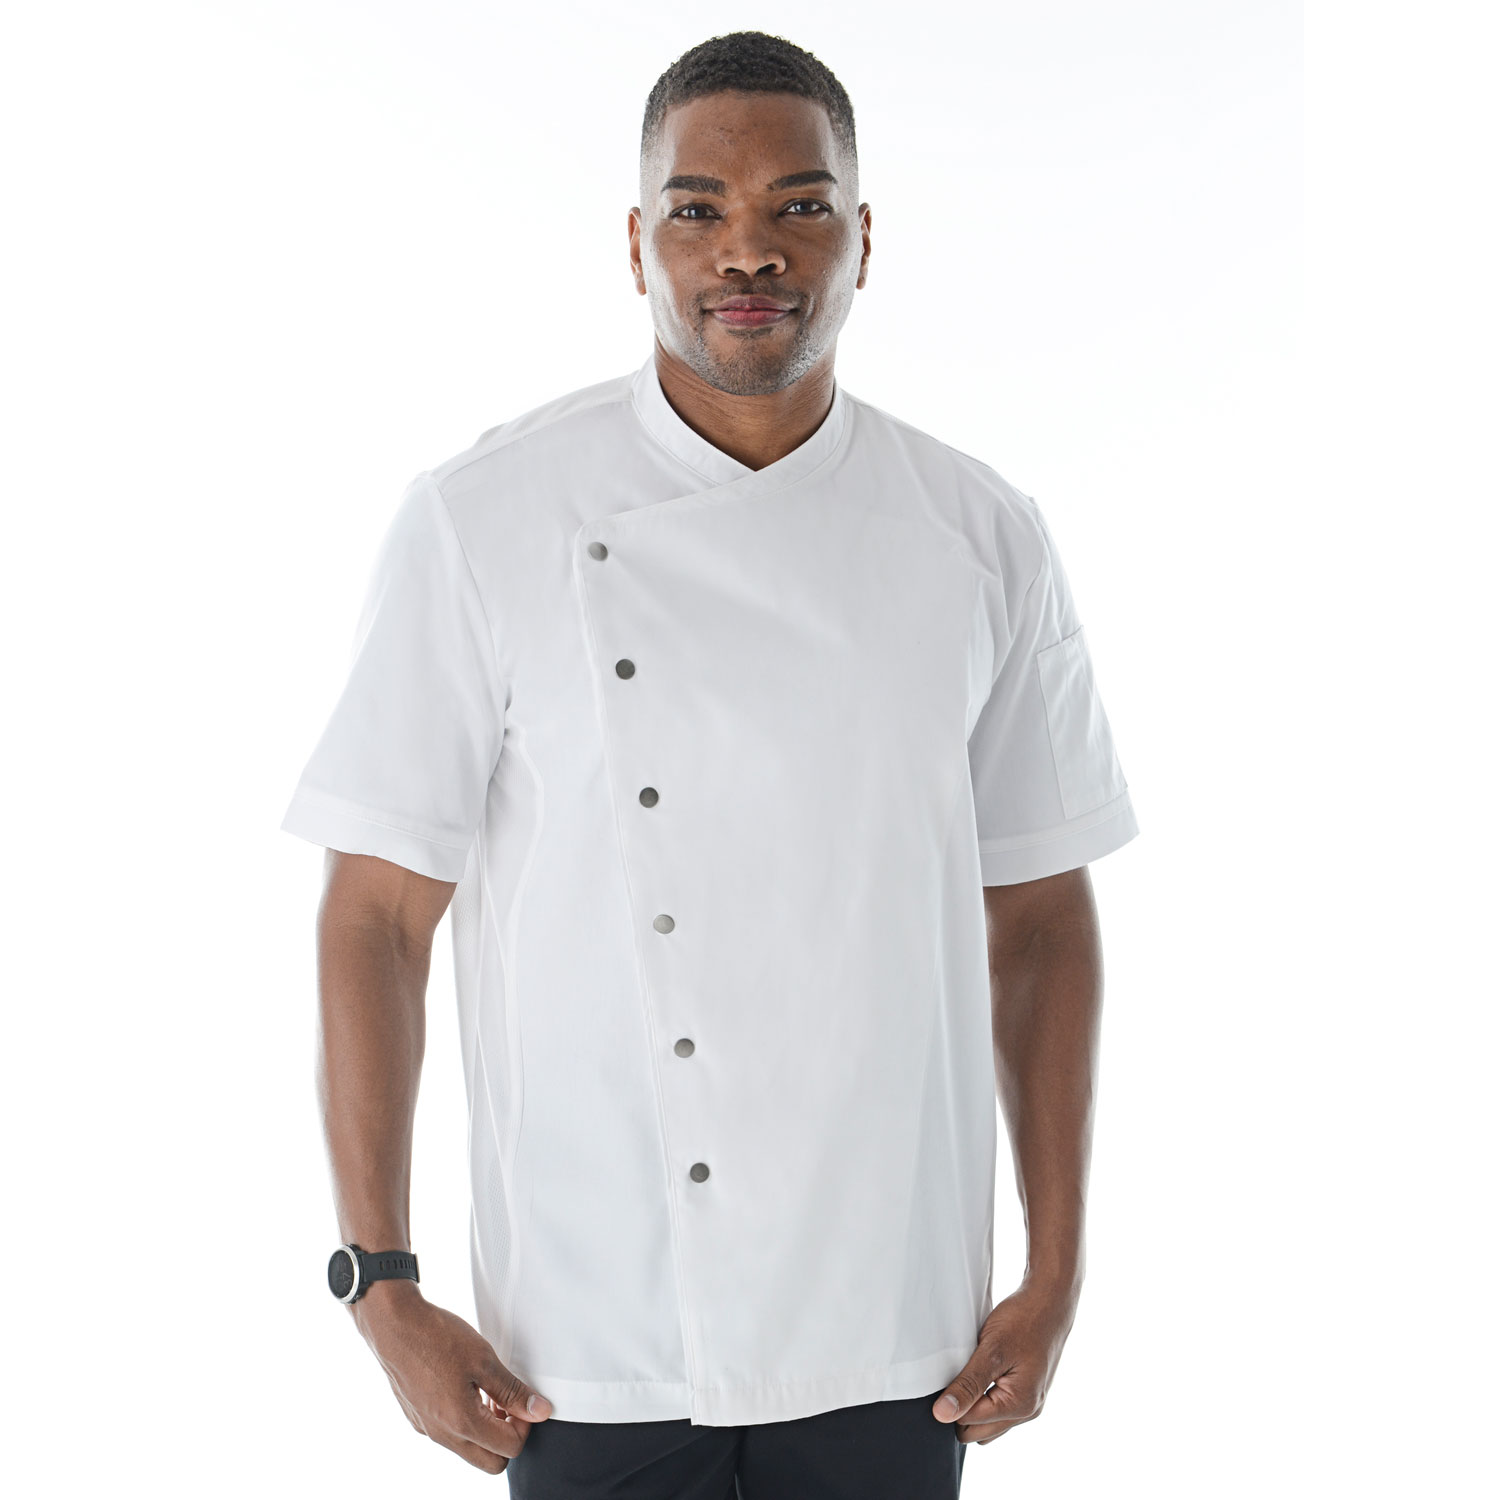 2X Chef Apparel Chefs Jacket Mesh Short Sleeve Kitchen Uniforms Chefwear